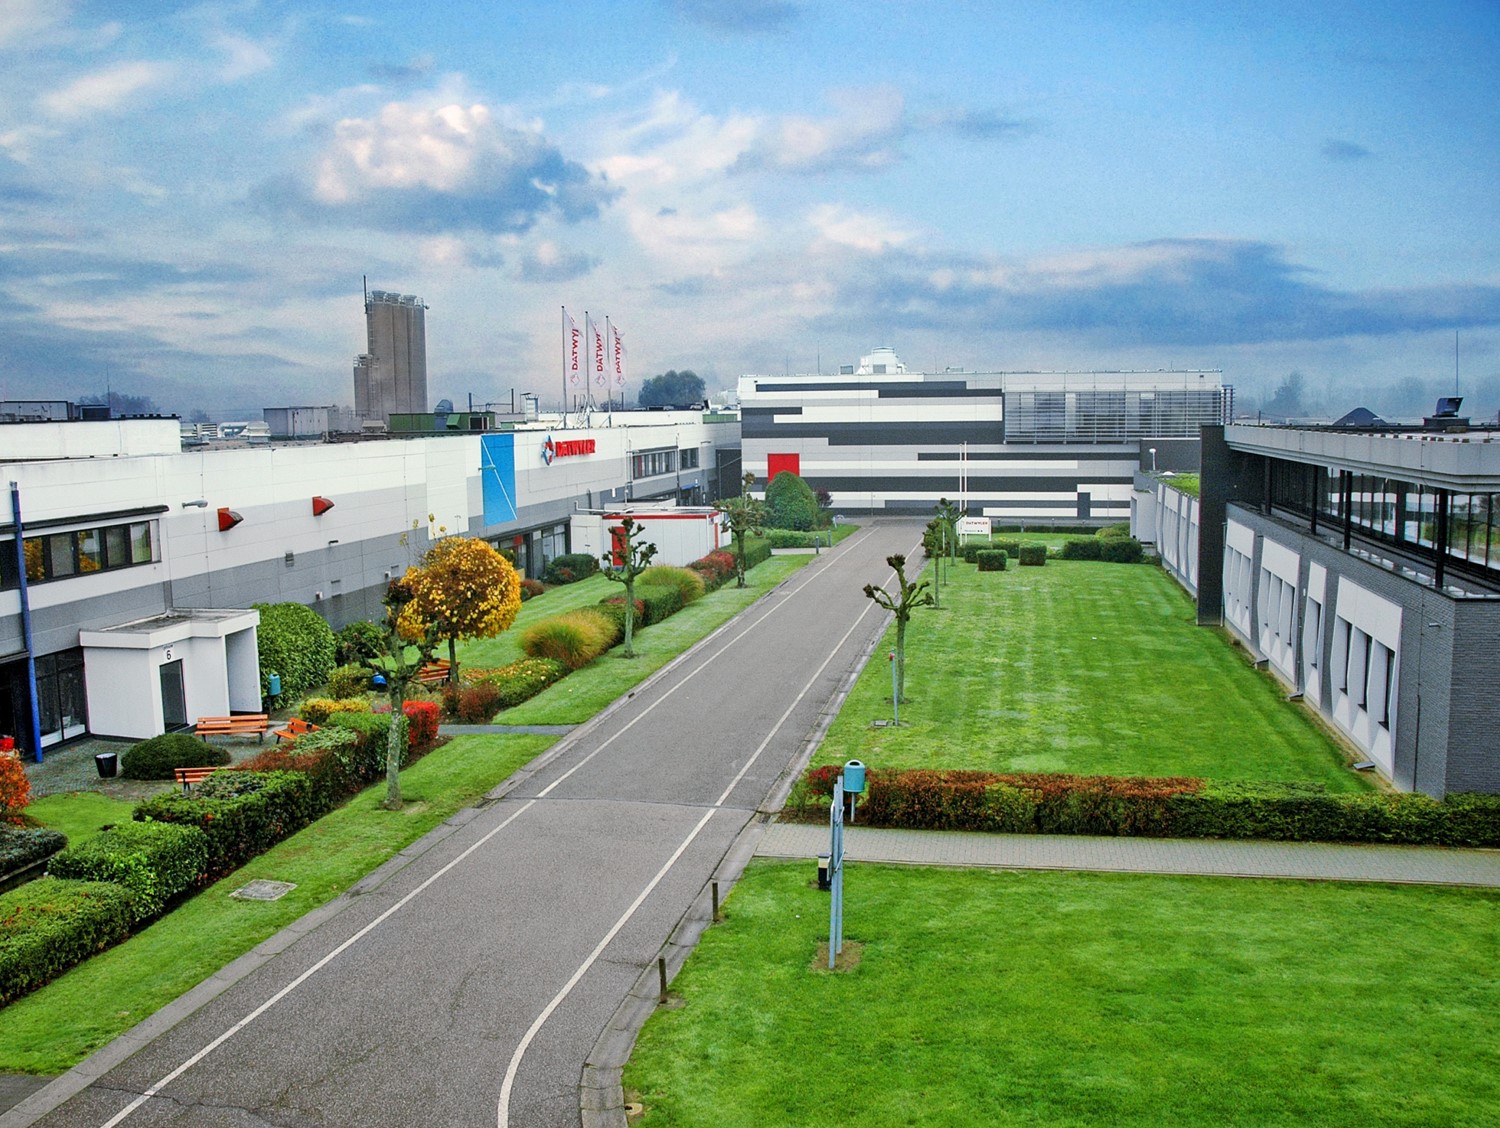 Datwyler factory building in Alken, Belgium